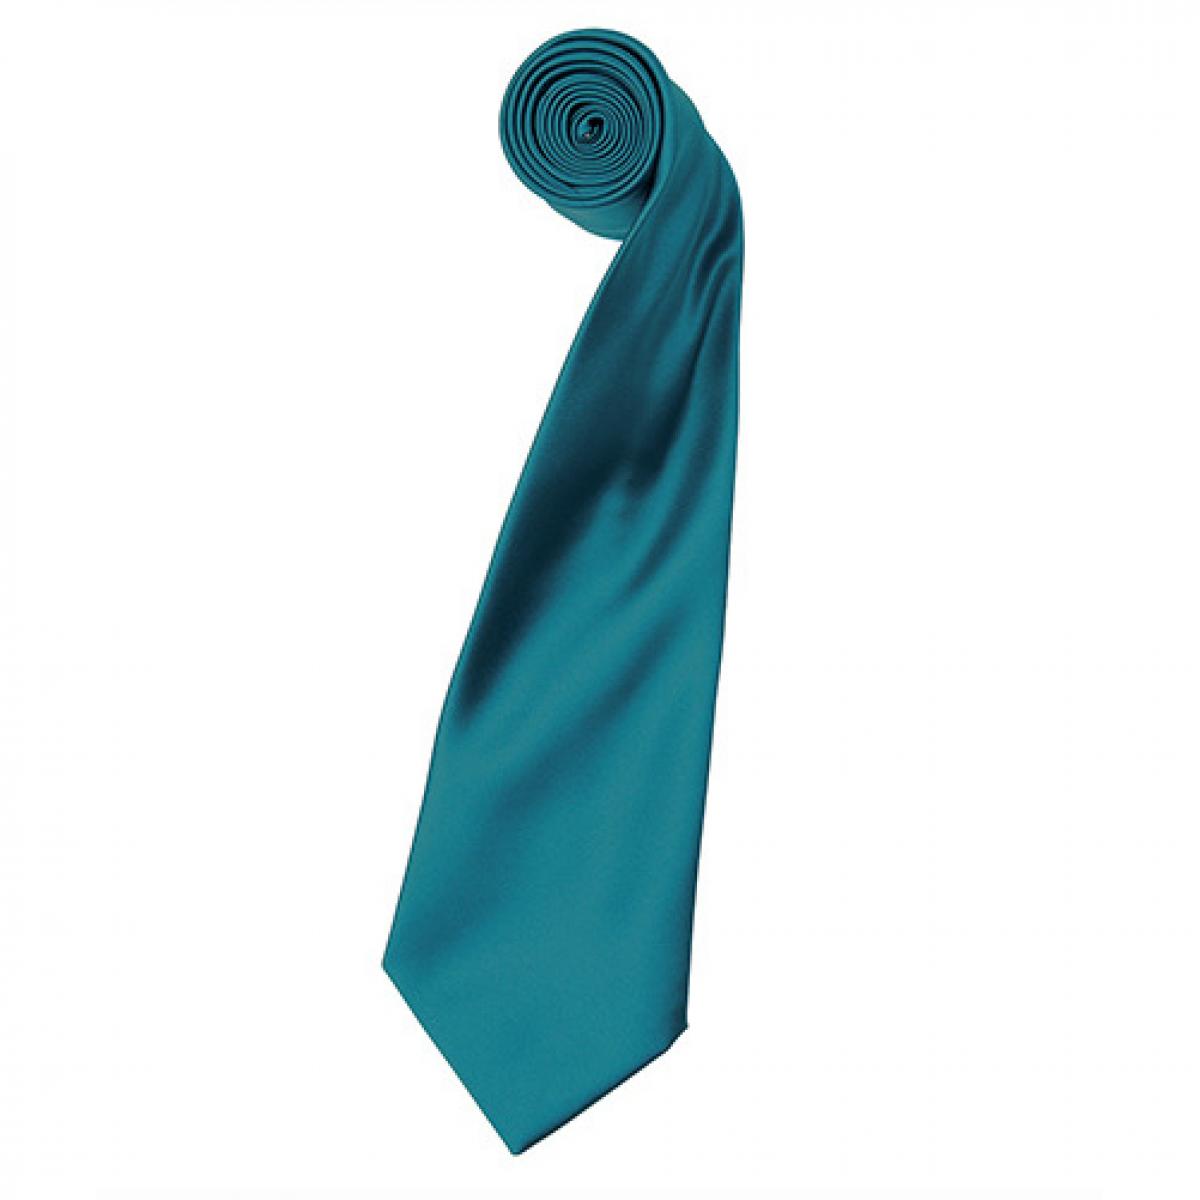 Hersteller: Premier Workwear Herstellernummer: PR750 Artikelbezeichnung: Satin Tie ´Colours´ / 144 x 8,5 cm Farbe: Teal (ca. Pantone 3155)